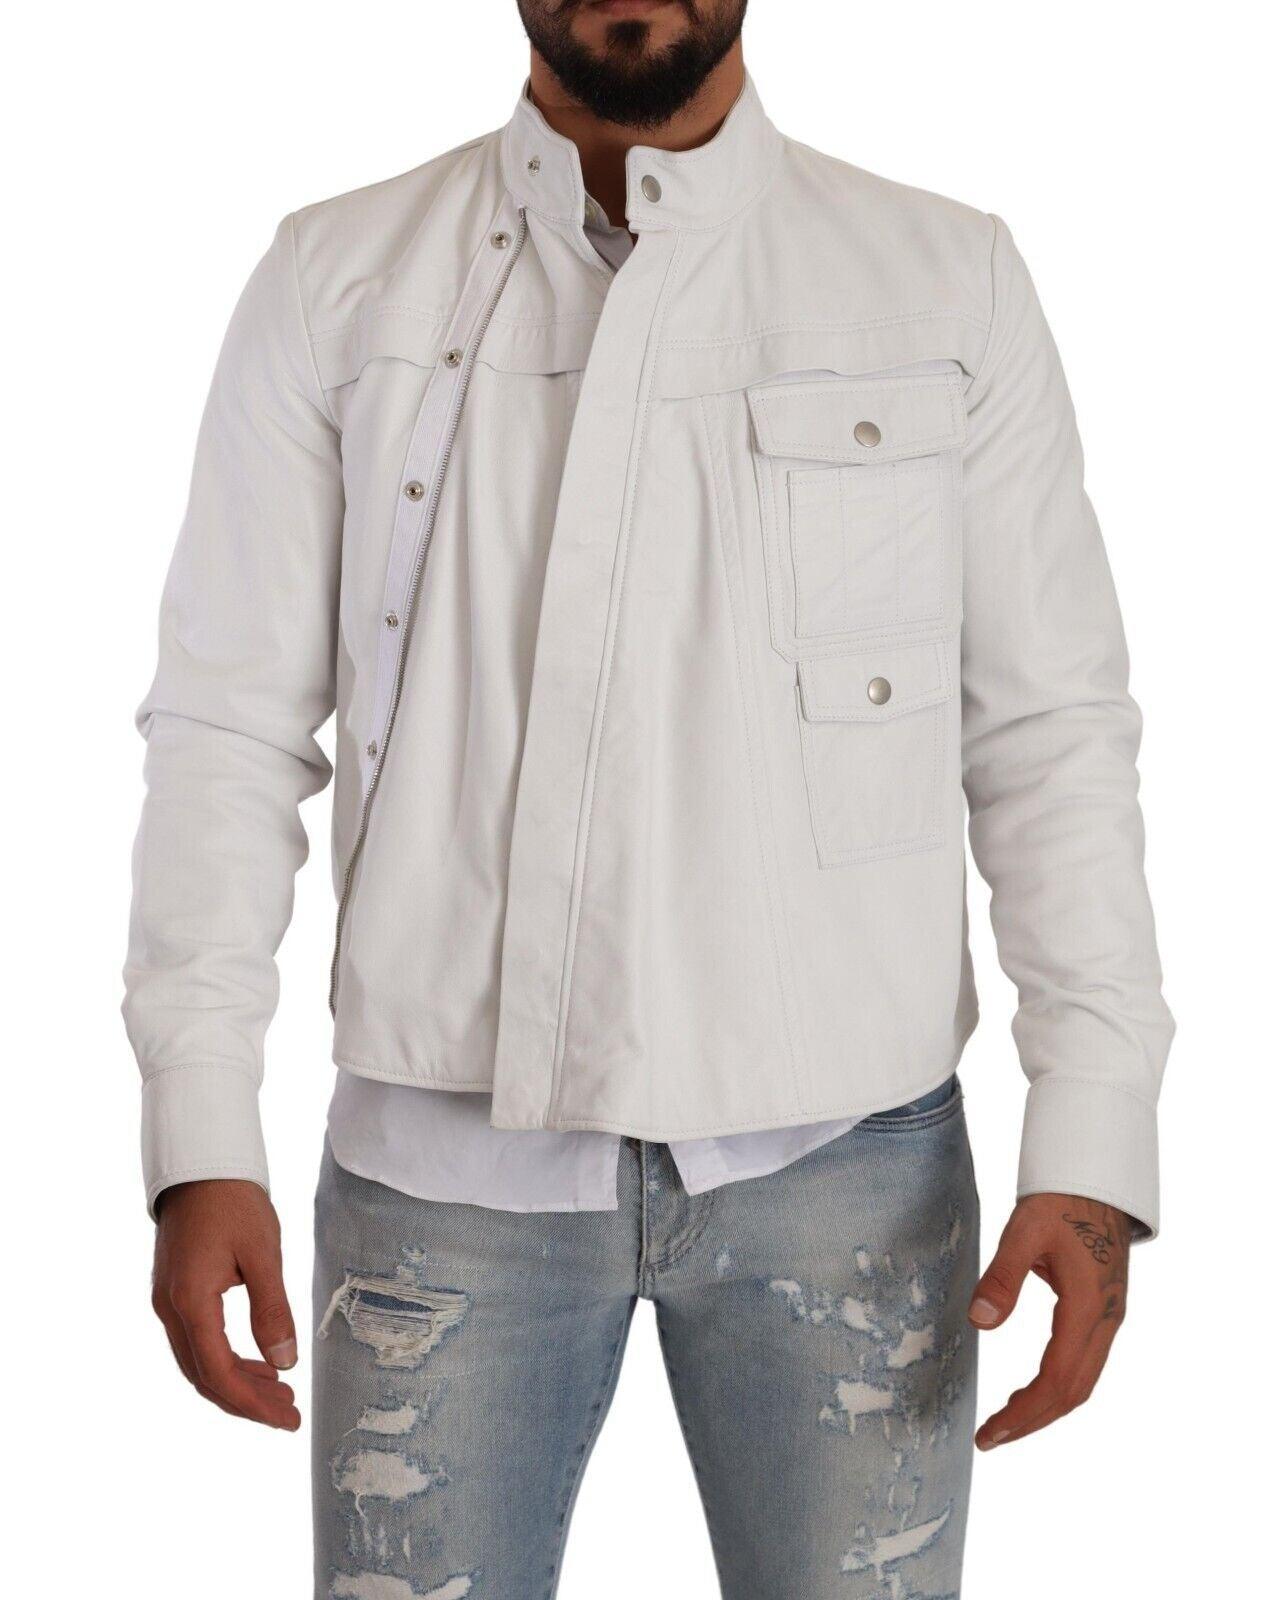 Diesel Exquisite White Leather Biker Jacket - PER.FASHION